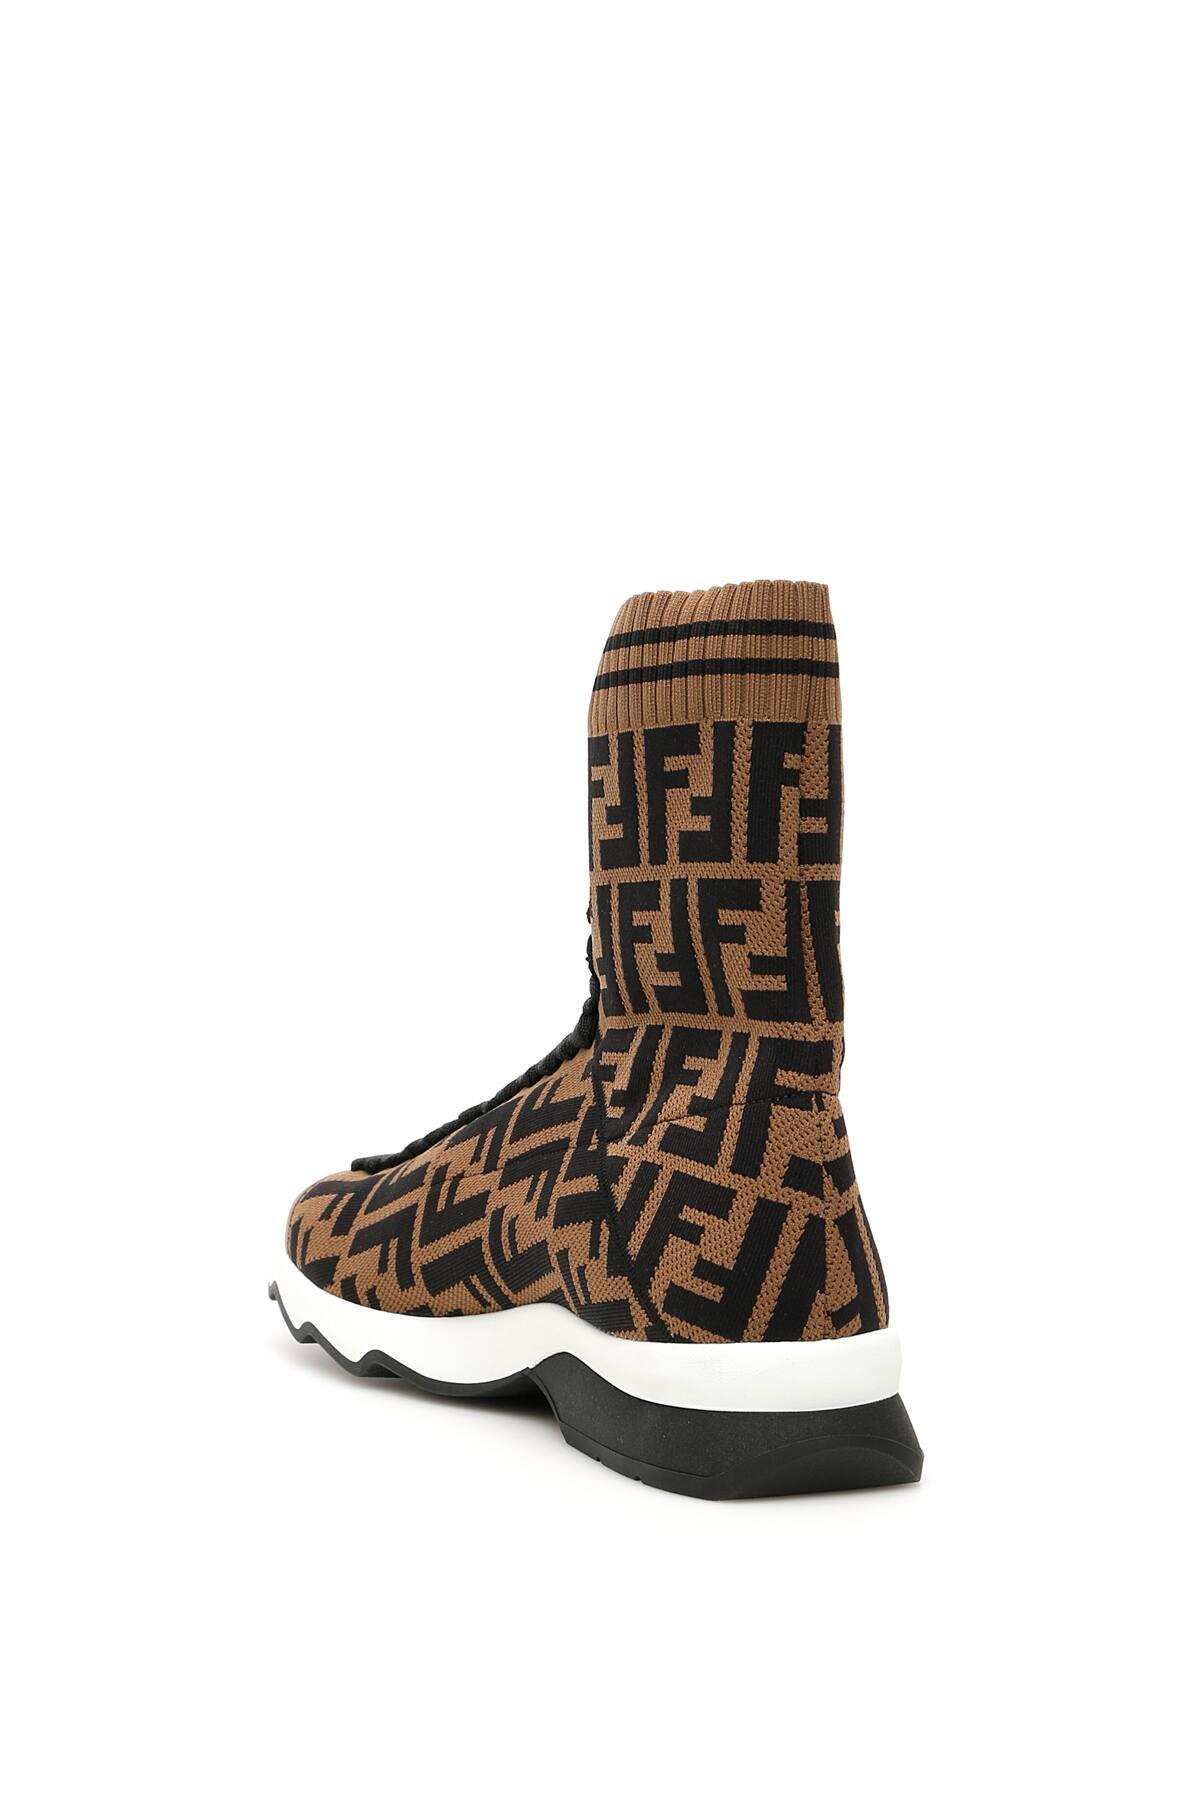 Fendi Rubber Hi-top Ff Sneakers in Brown,Black (Brown) - Save 21% - Lyst